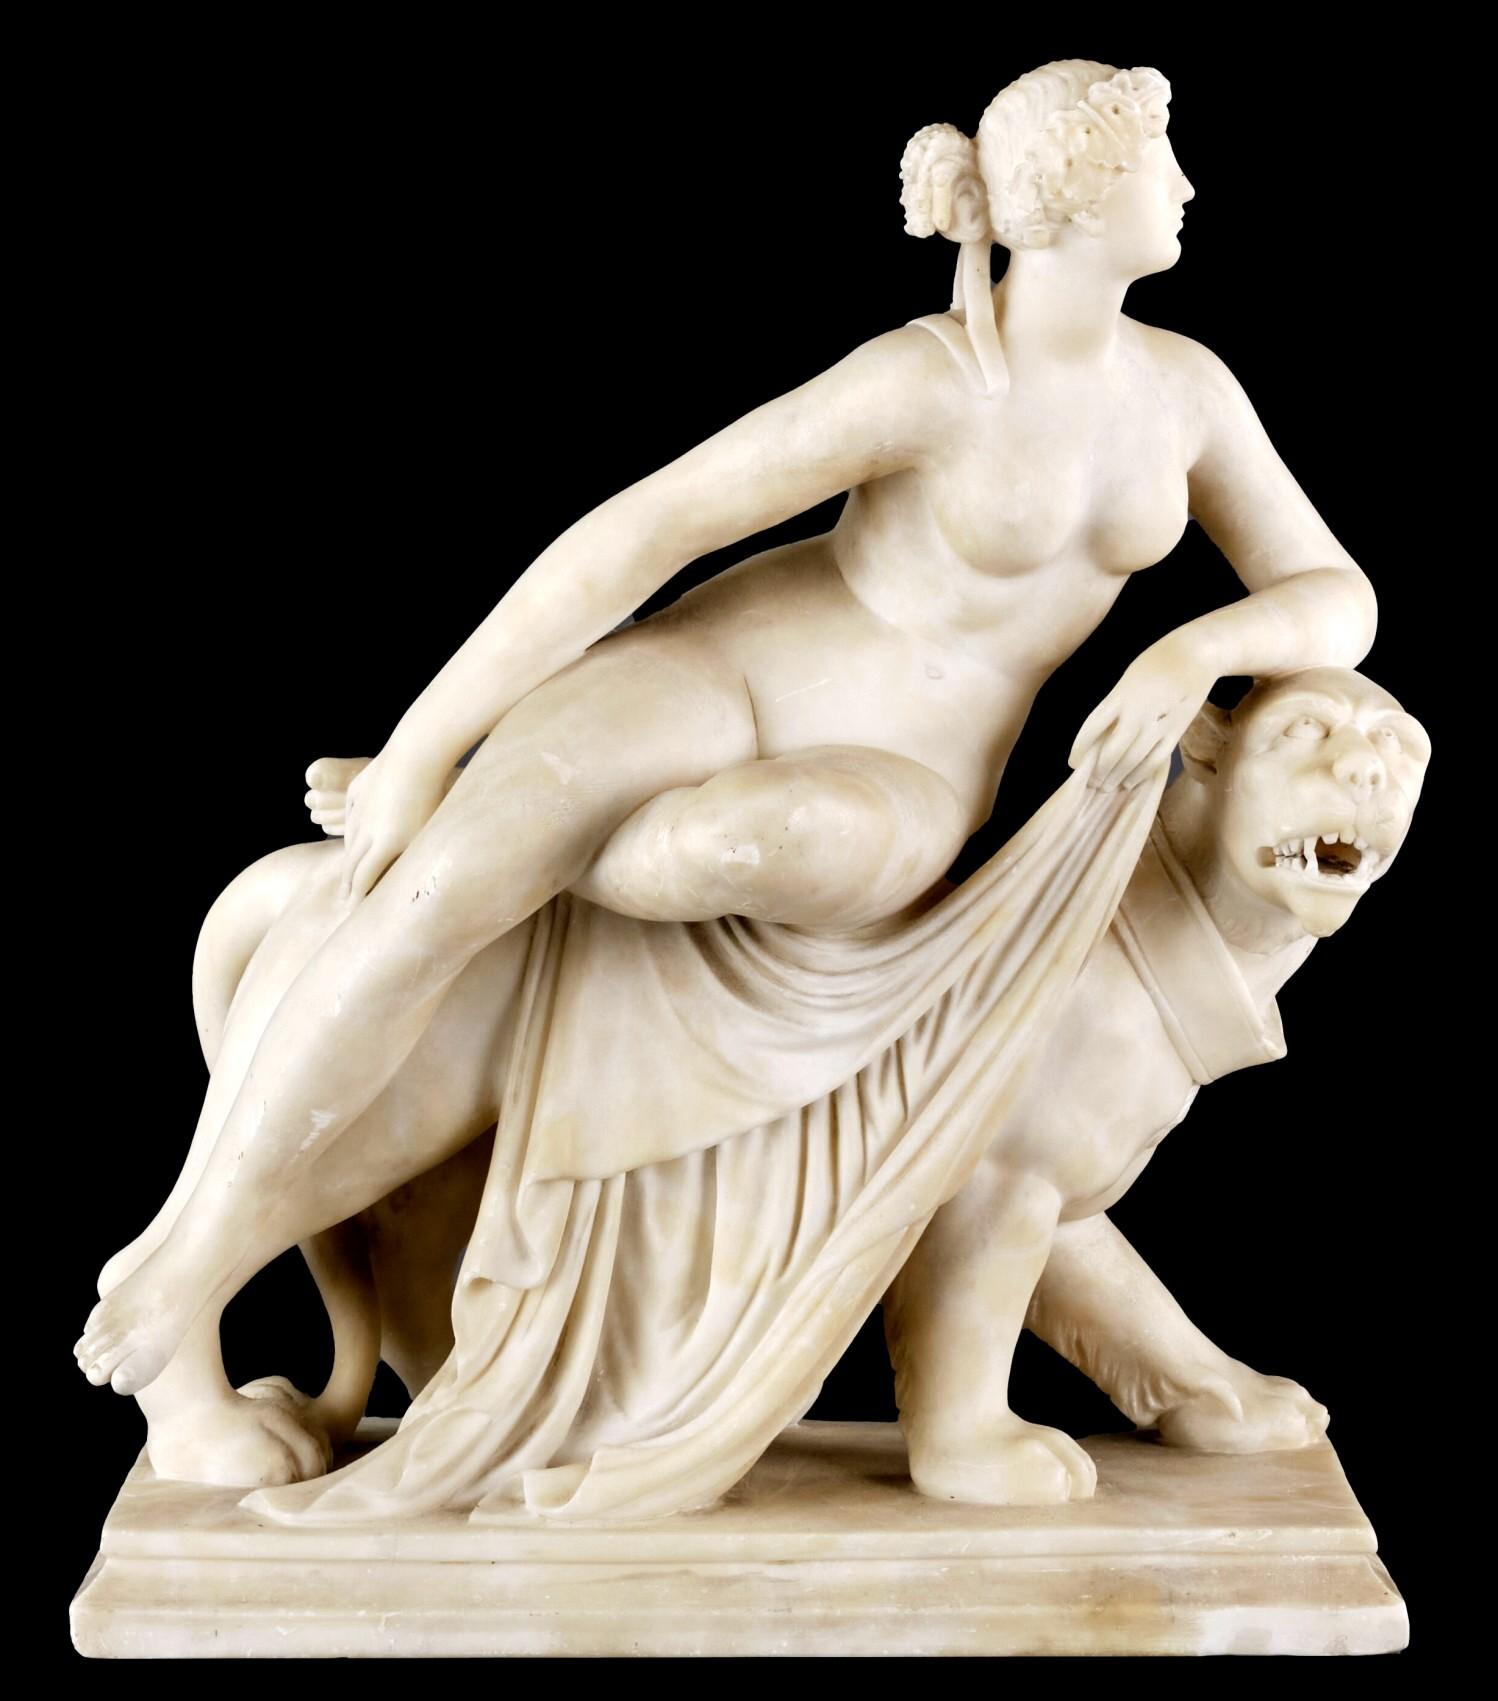 Eine große und fein gearbeitete Alabasterfigur von Ariadne, der Frau von Dionysos, dem Gott des Weines. Sie ist mit einem Diadem aus Weinblättern geschmückt und ruht auf dem Rücken von Dionysos' schreitendem Panther. 
Feinfühlig und gekonnt